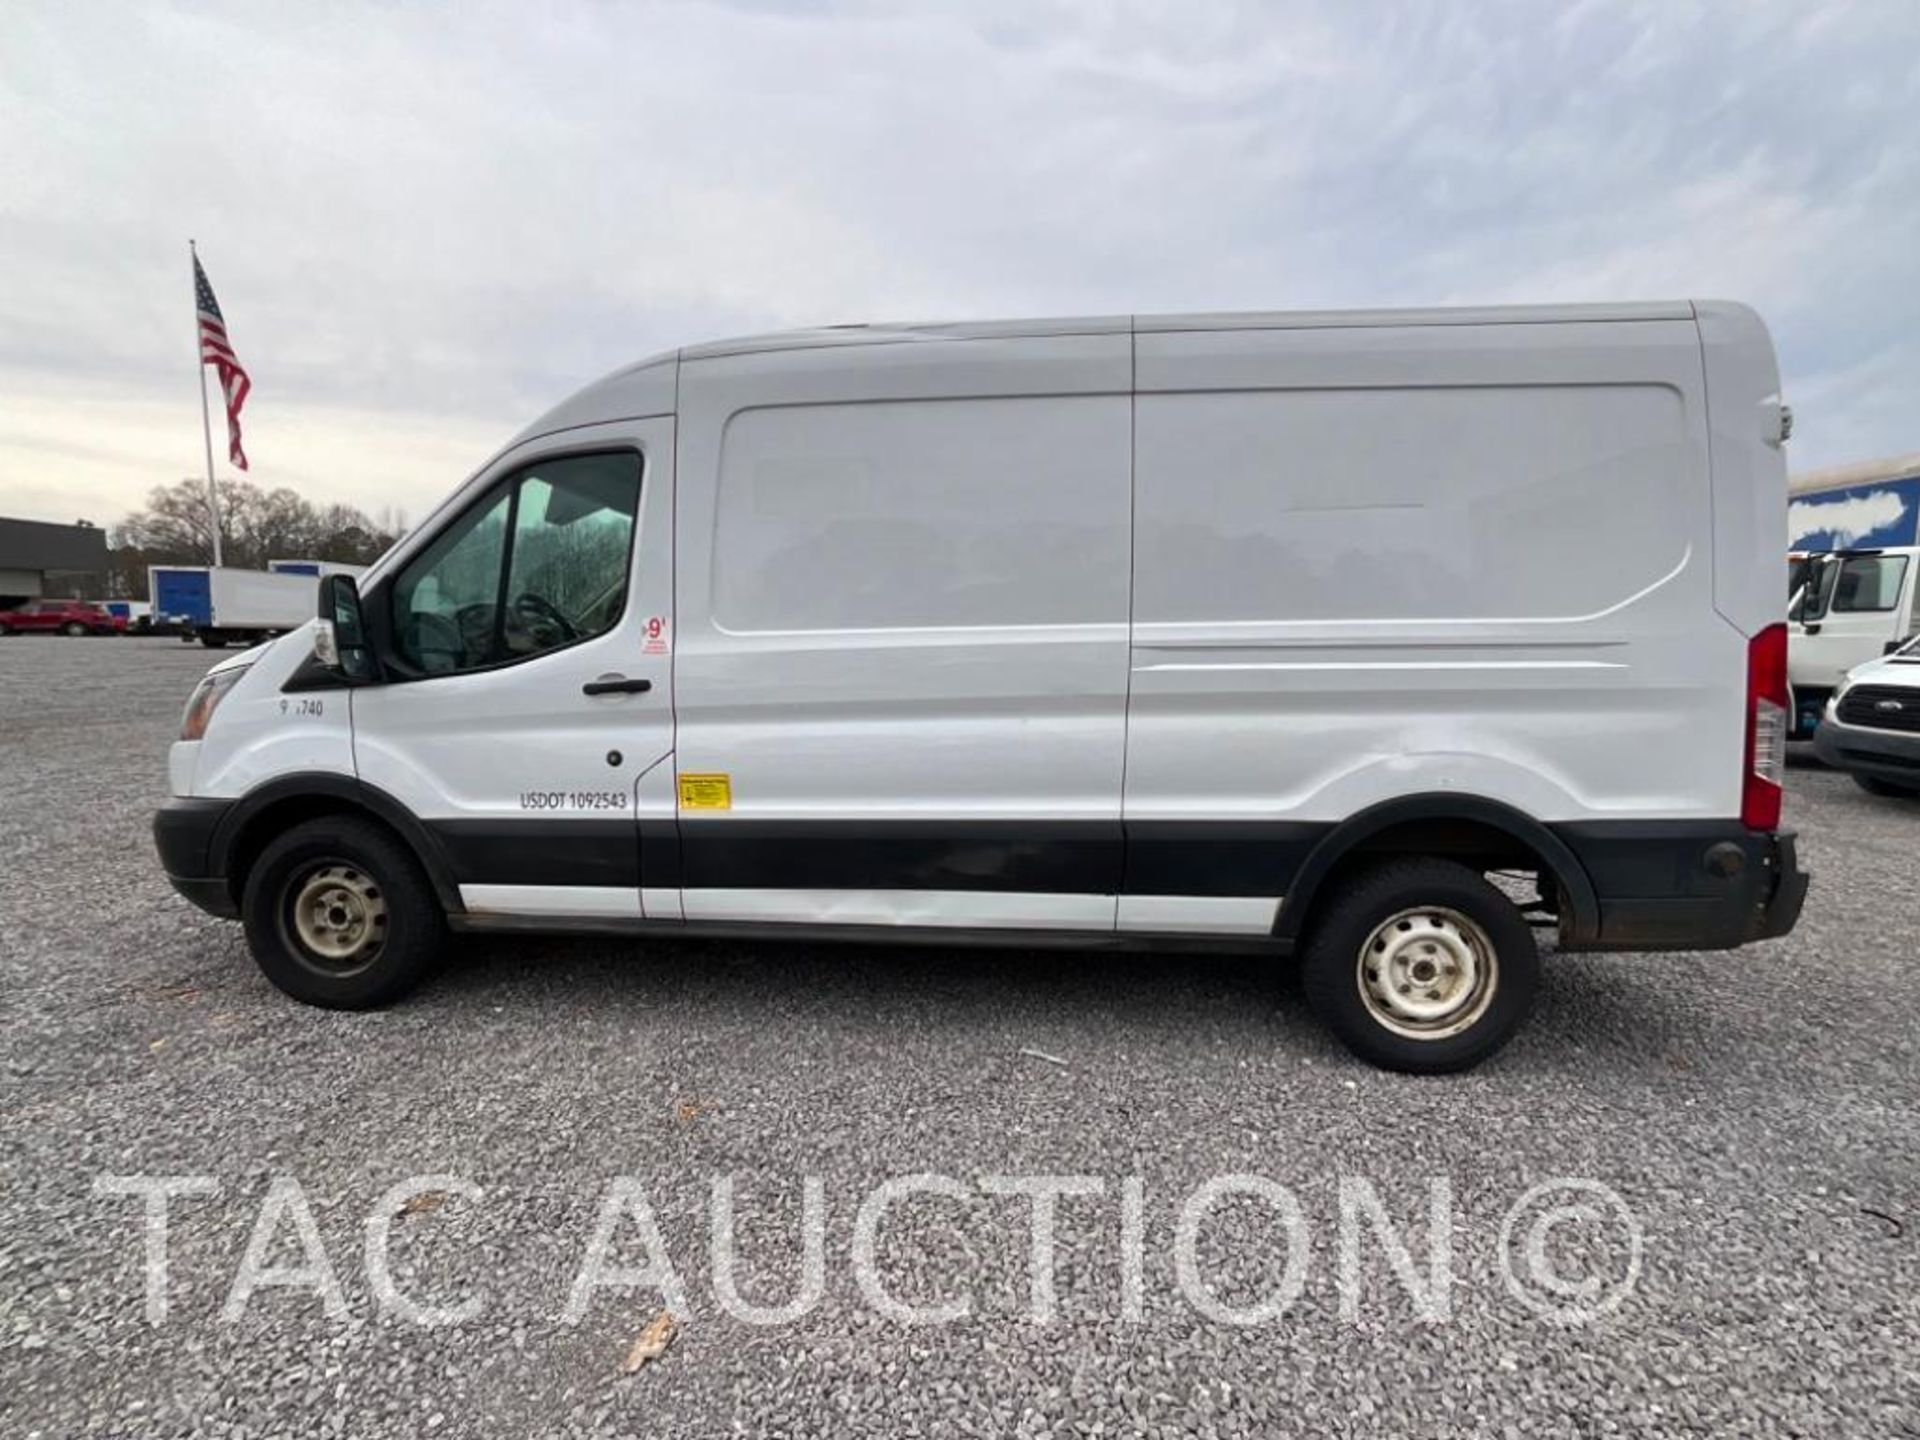 2019 Ford Transit 150 Cargo Van - Image 3 of 33